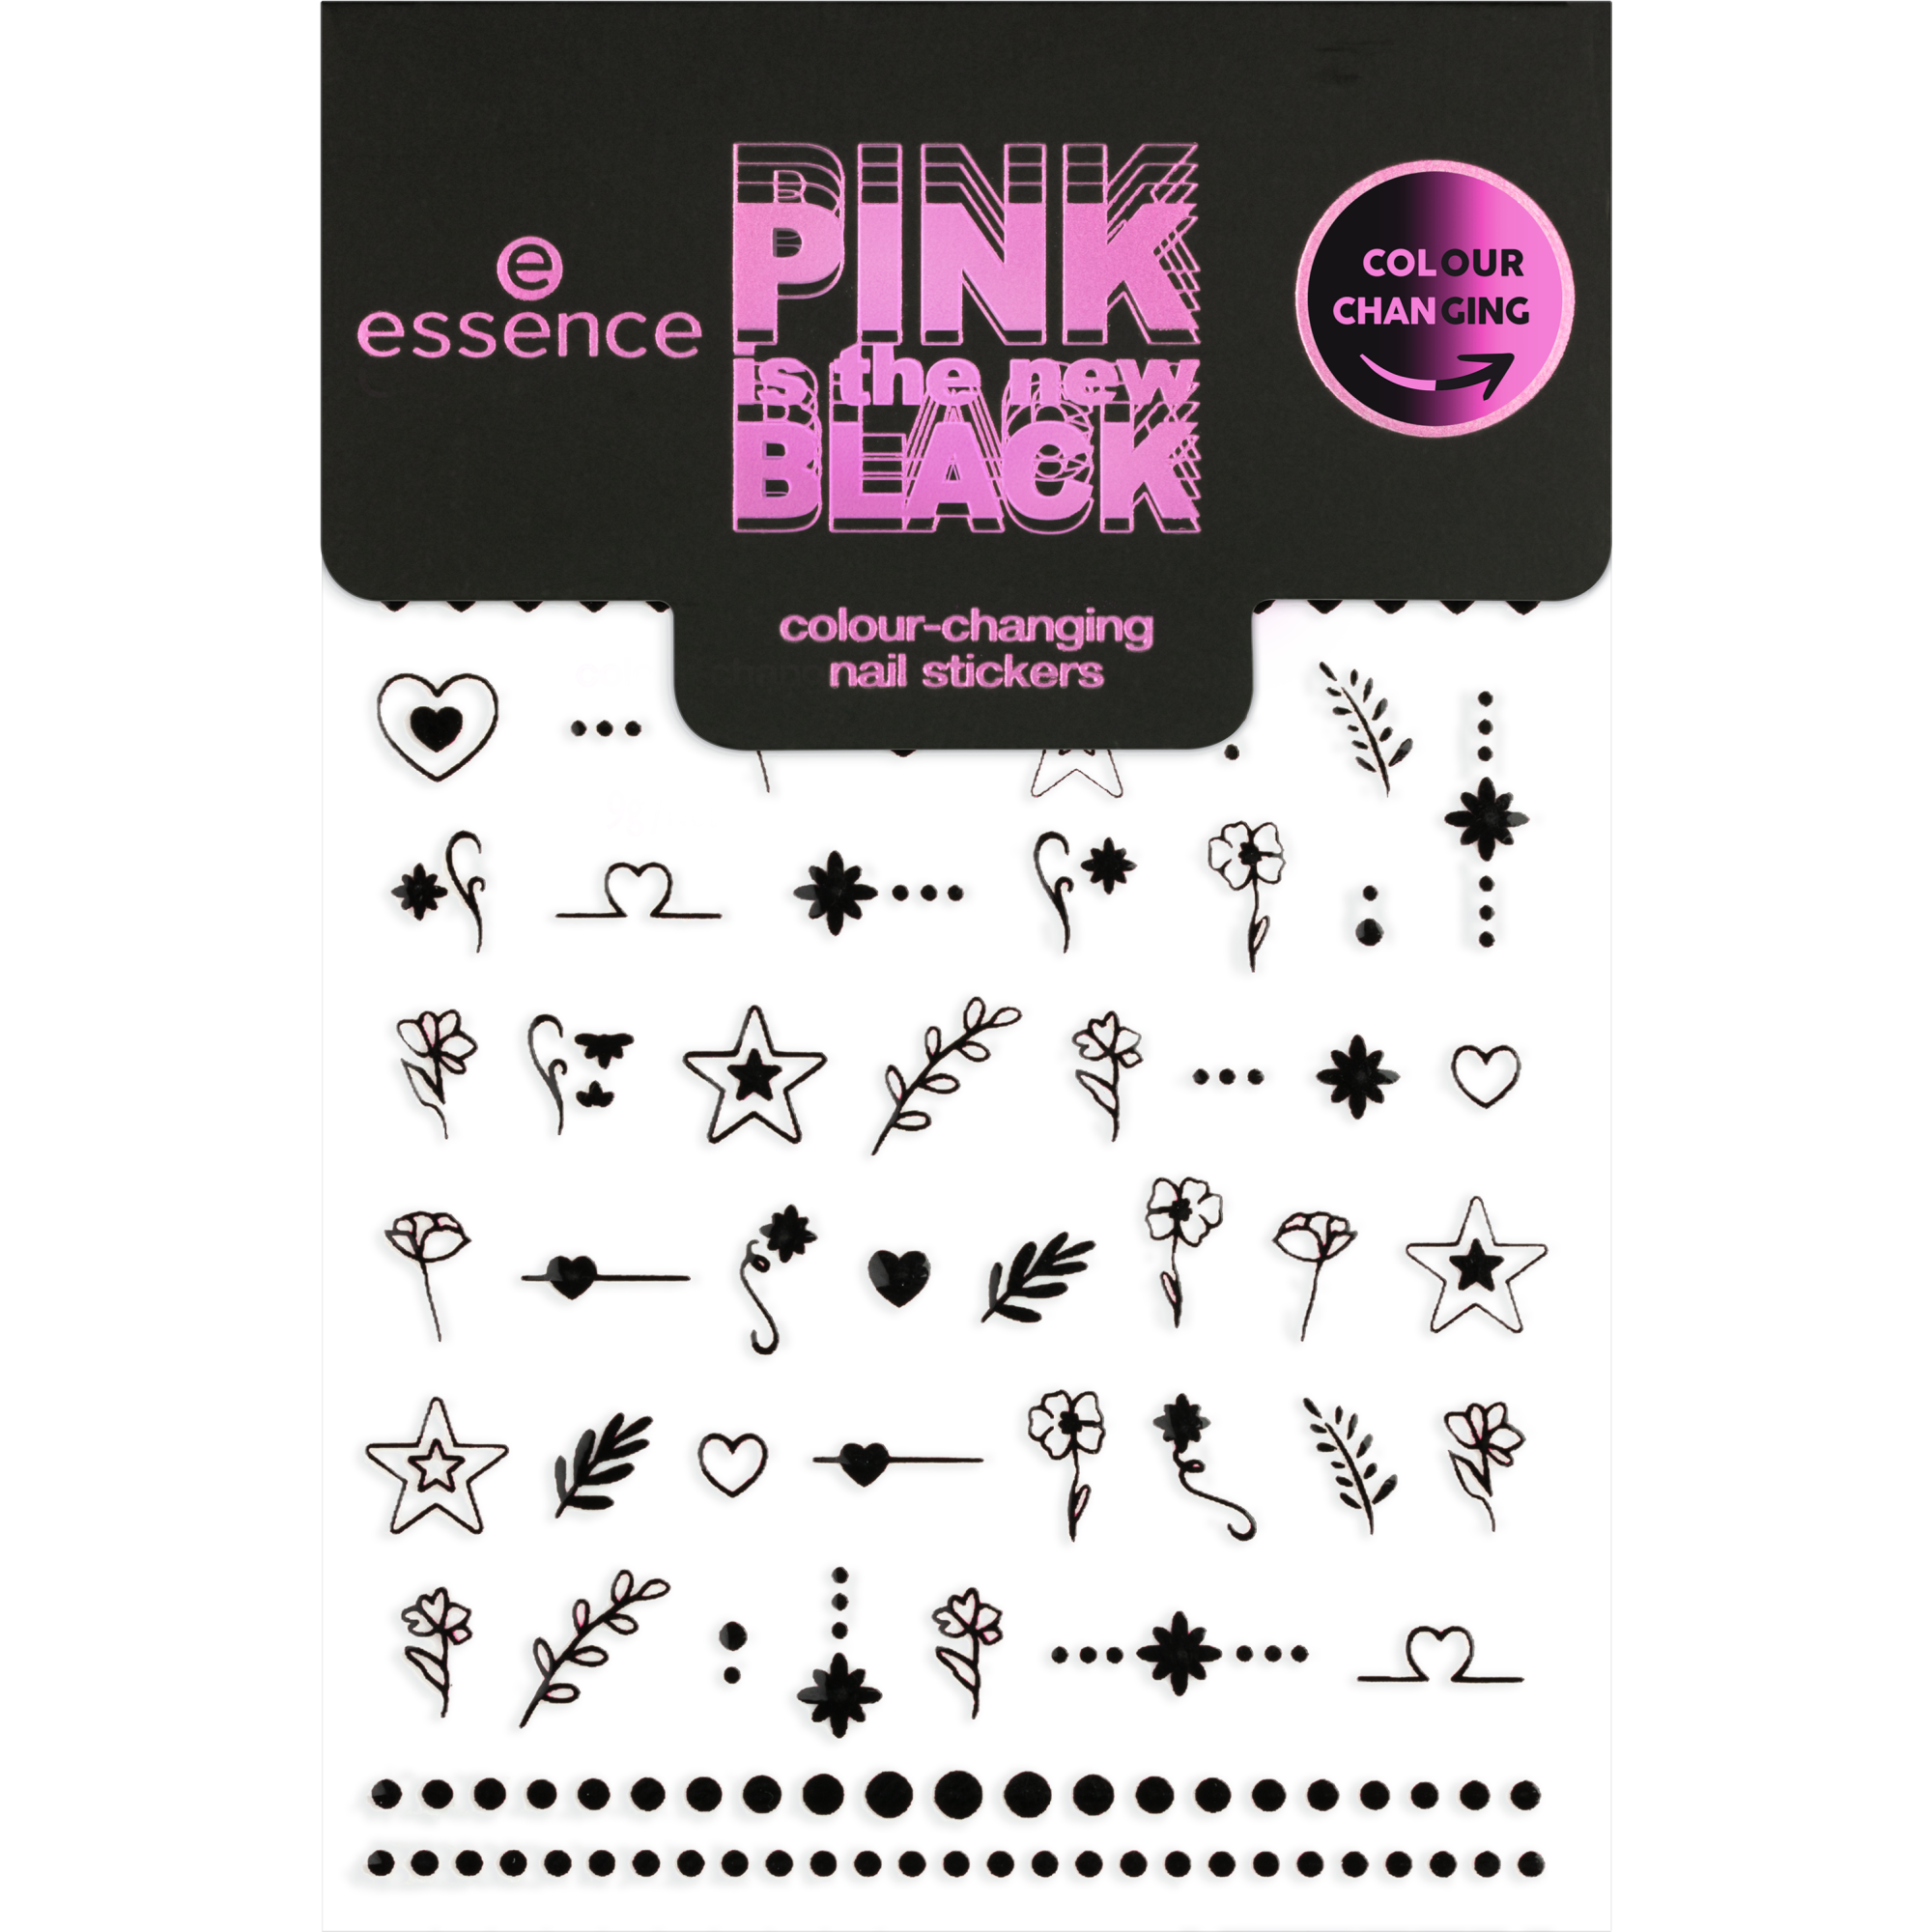 PINK is the new BLACK väriä vaihtavat kynsitarrat